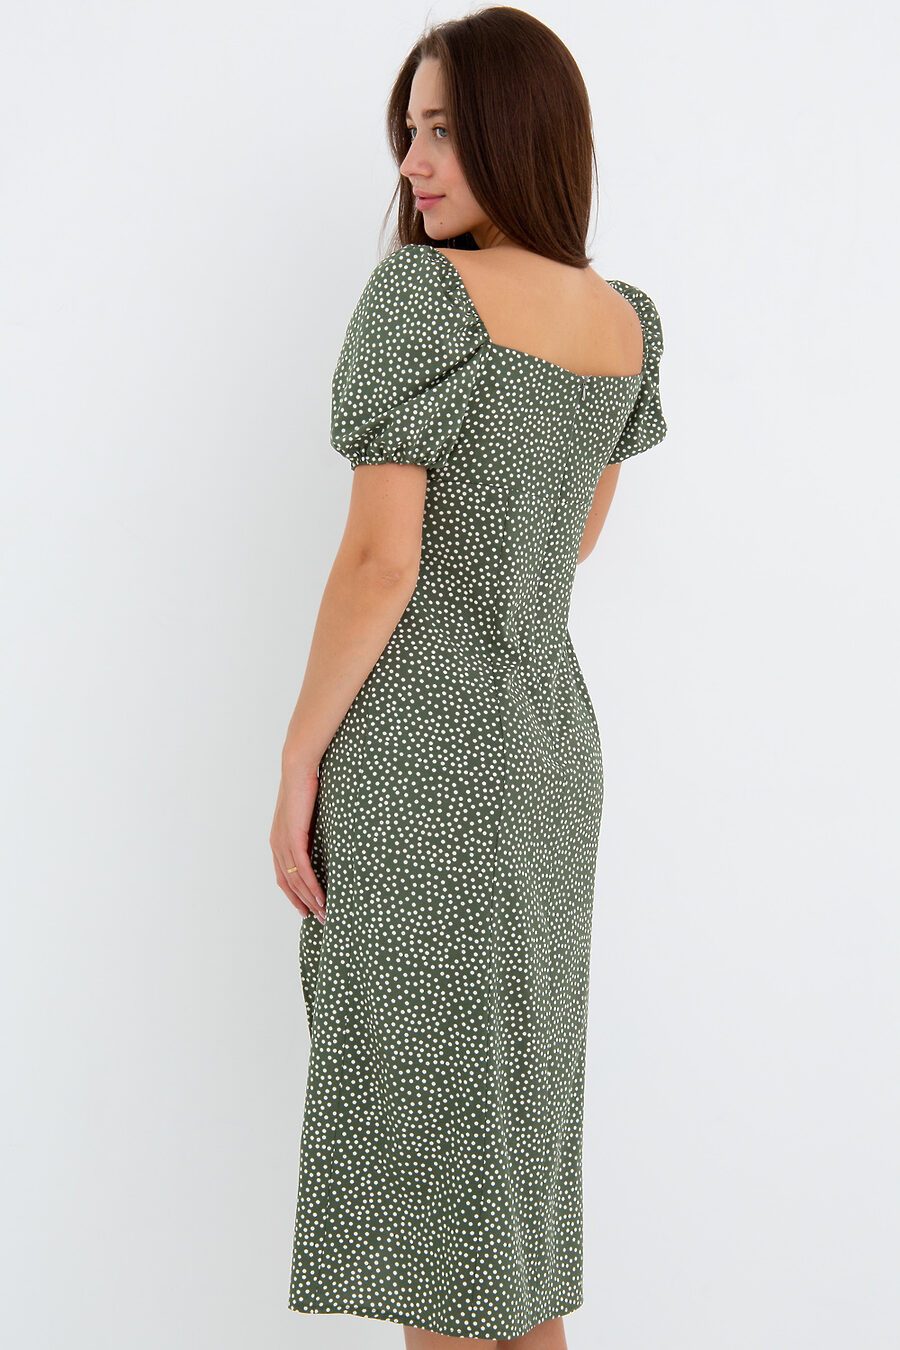 Платье П-2 для женщин НАТАЛИ 775467 купить оптом от производителя. Совместная покупка женской одежды в OptMoyo